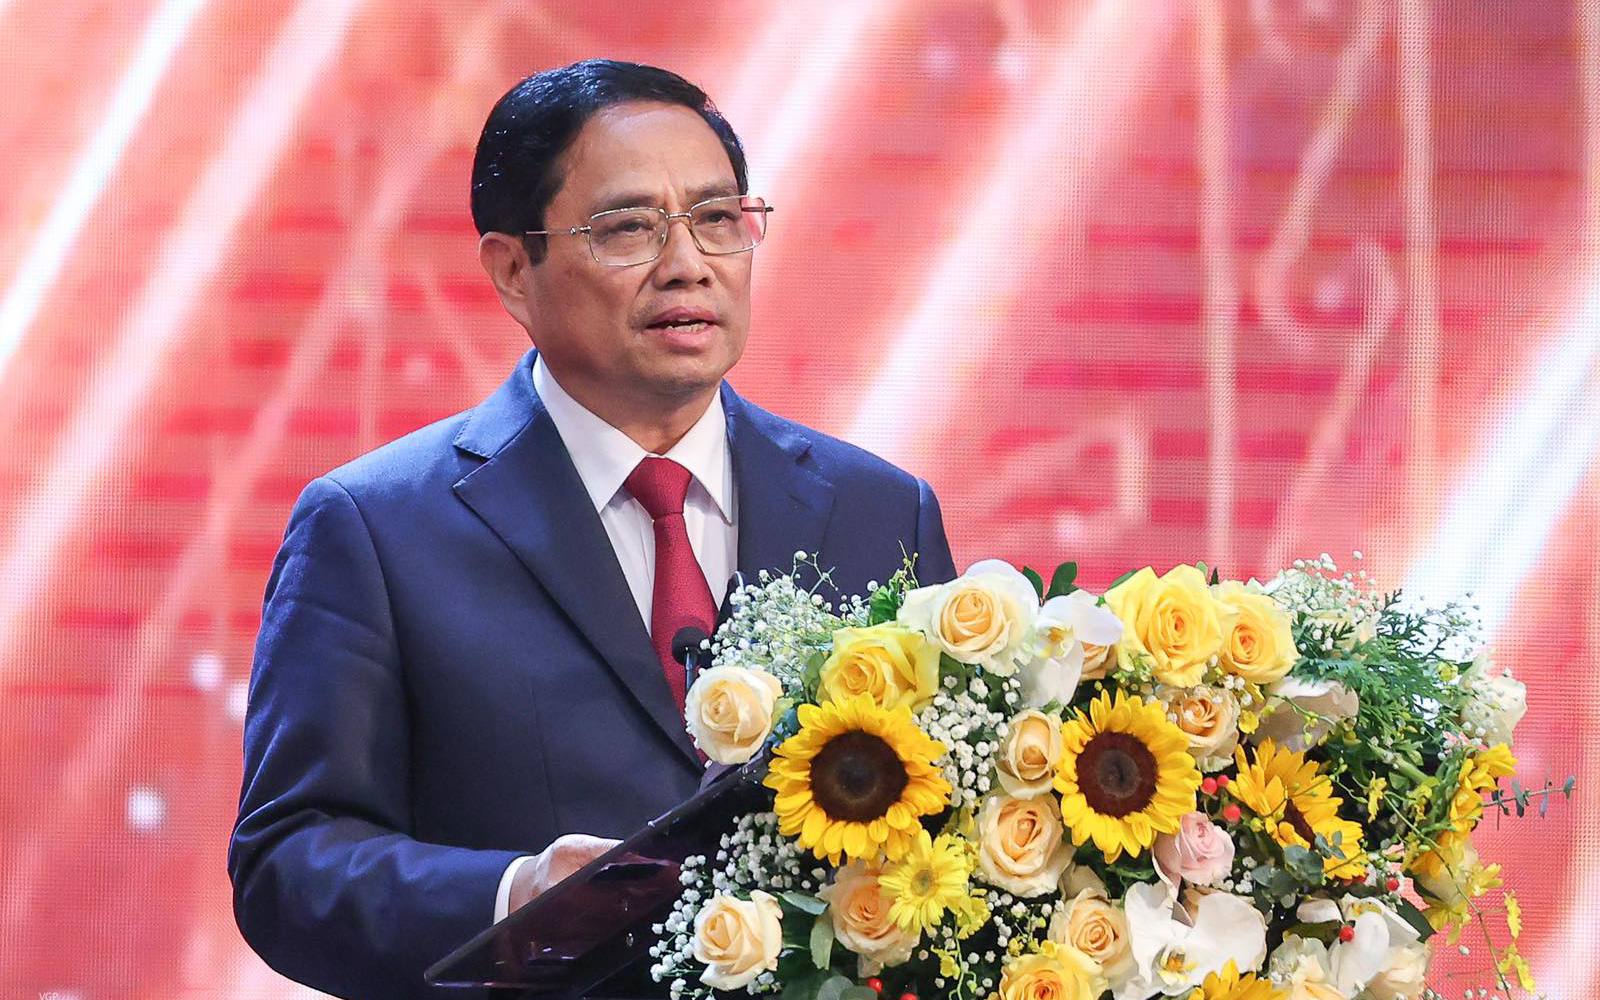 Thủ tướng Phạm Minh Chính: Xây dựng nền báo chí, truyền thông chuyên nghiệp, nhân văn và hiện đại*